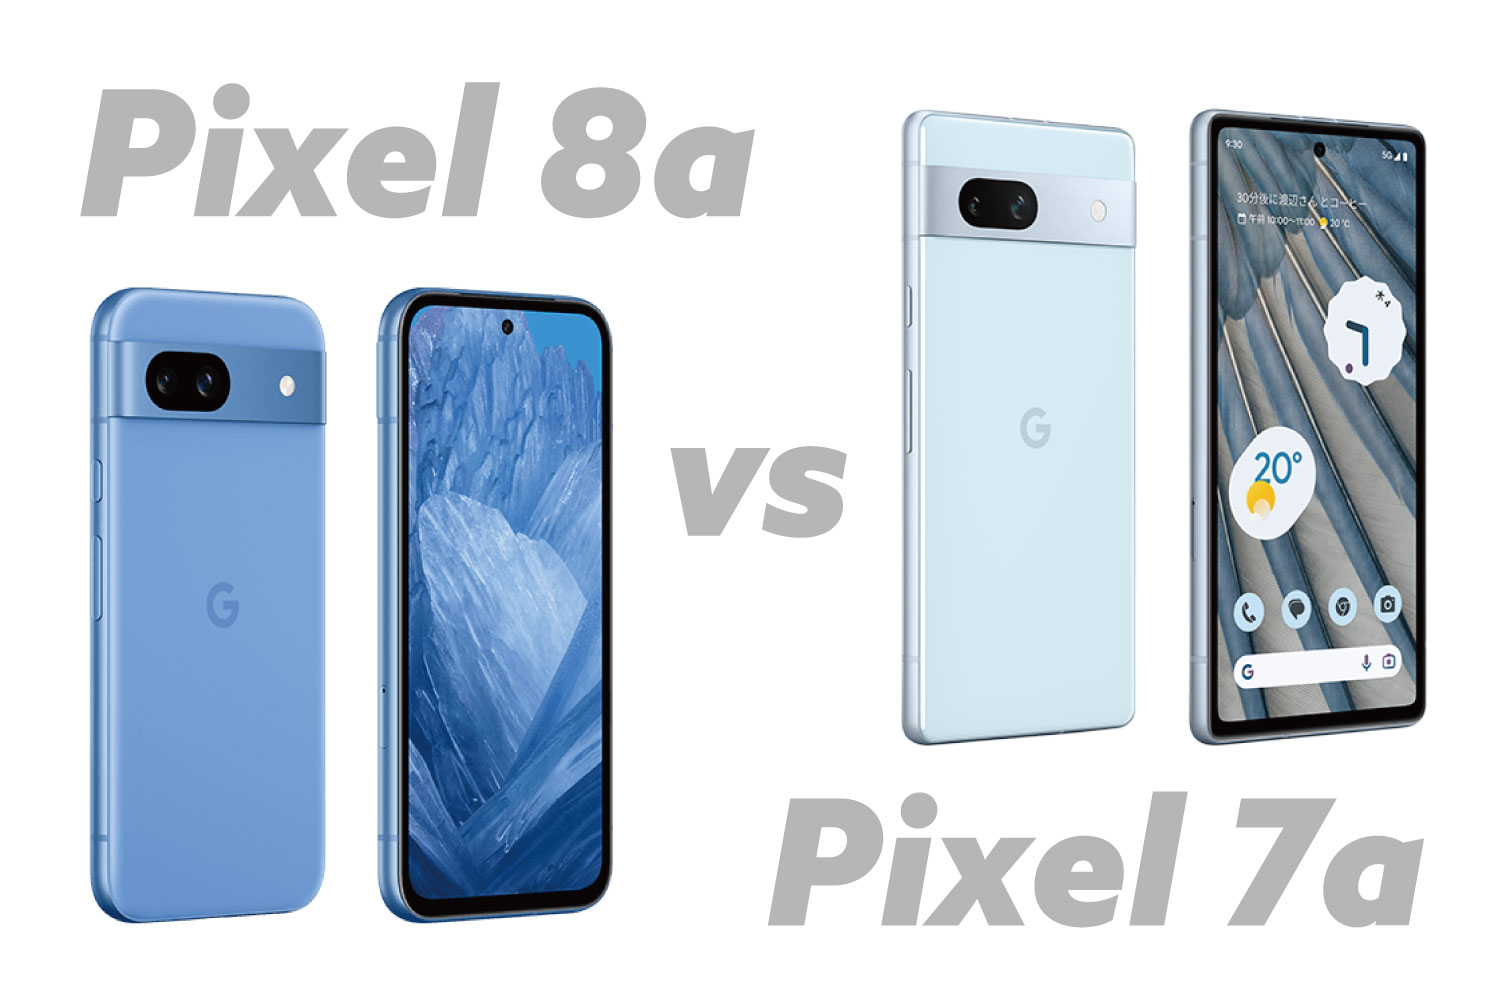 Pixel 8a vs Pixel 7a